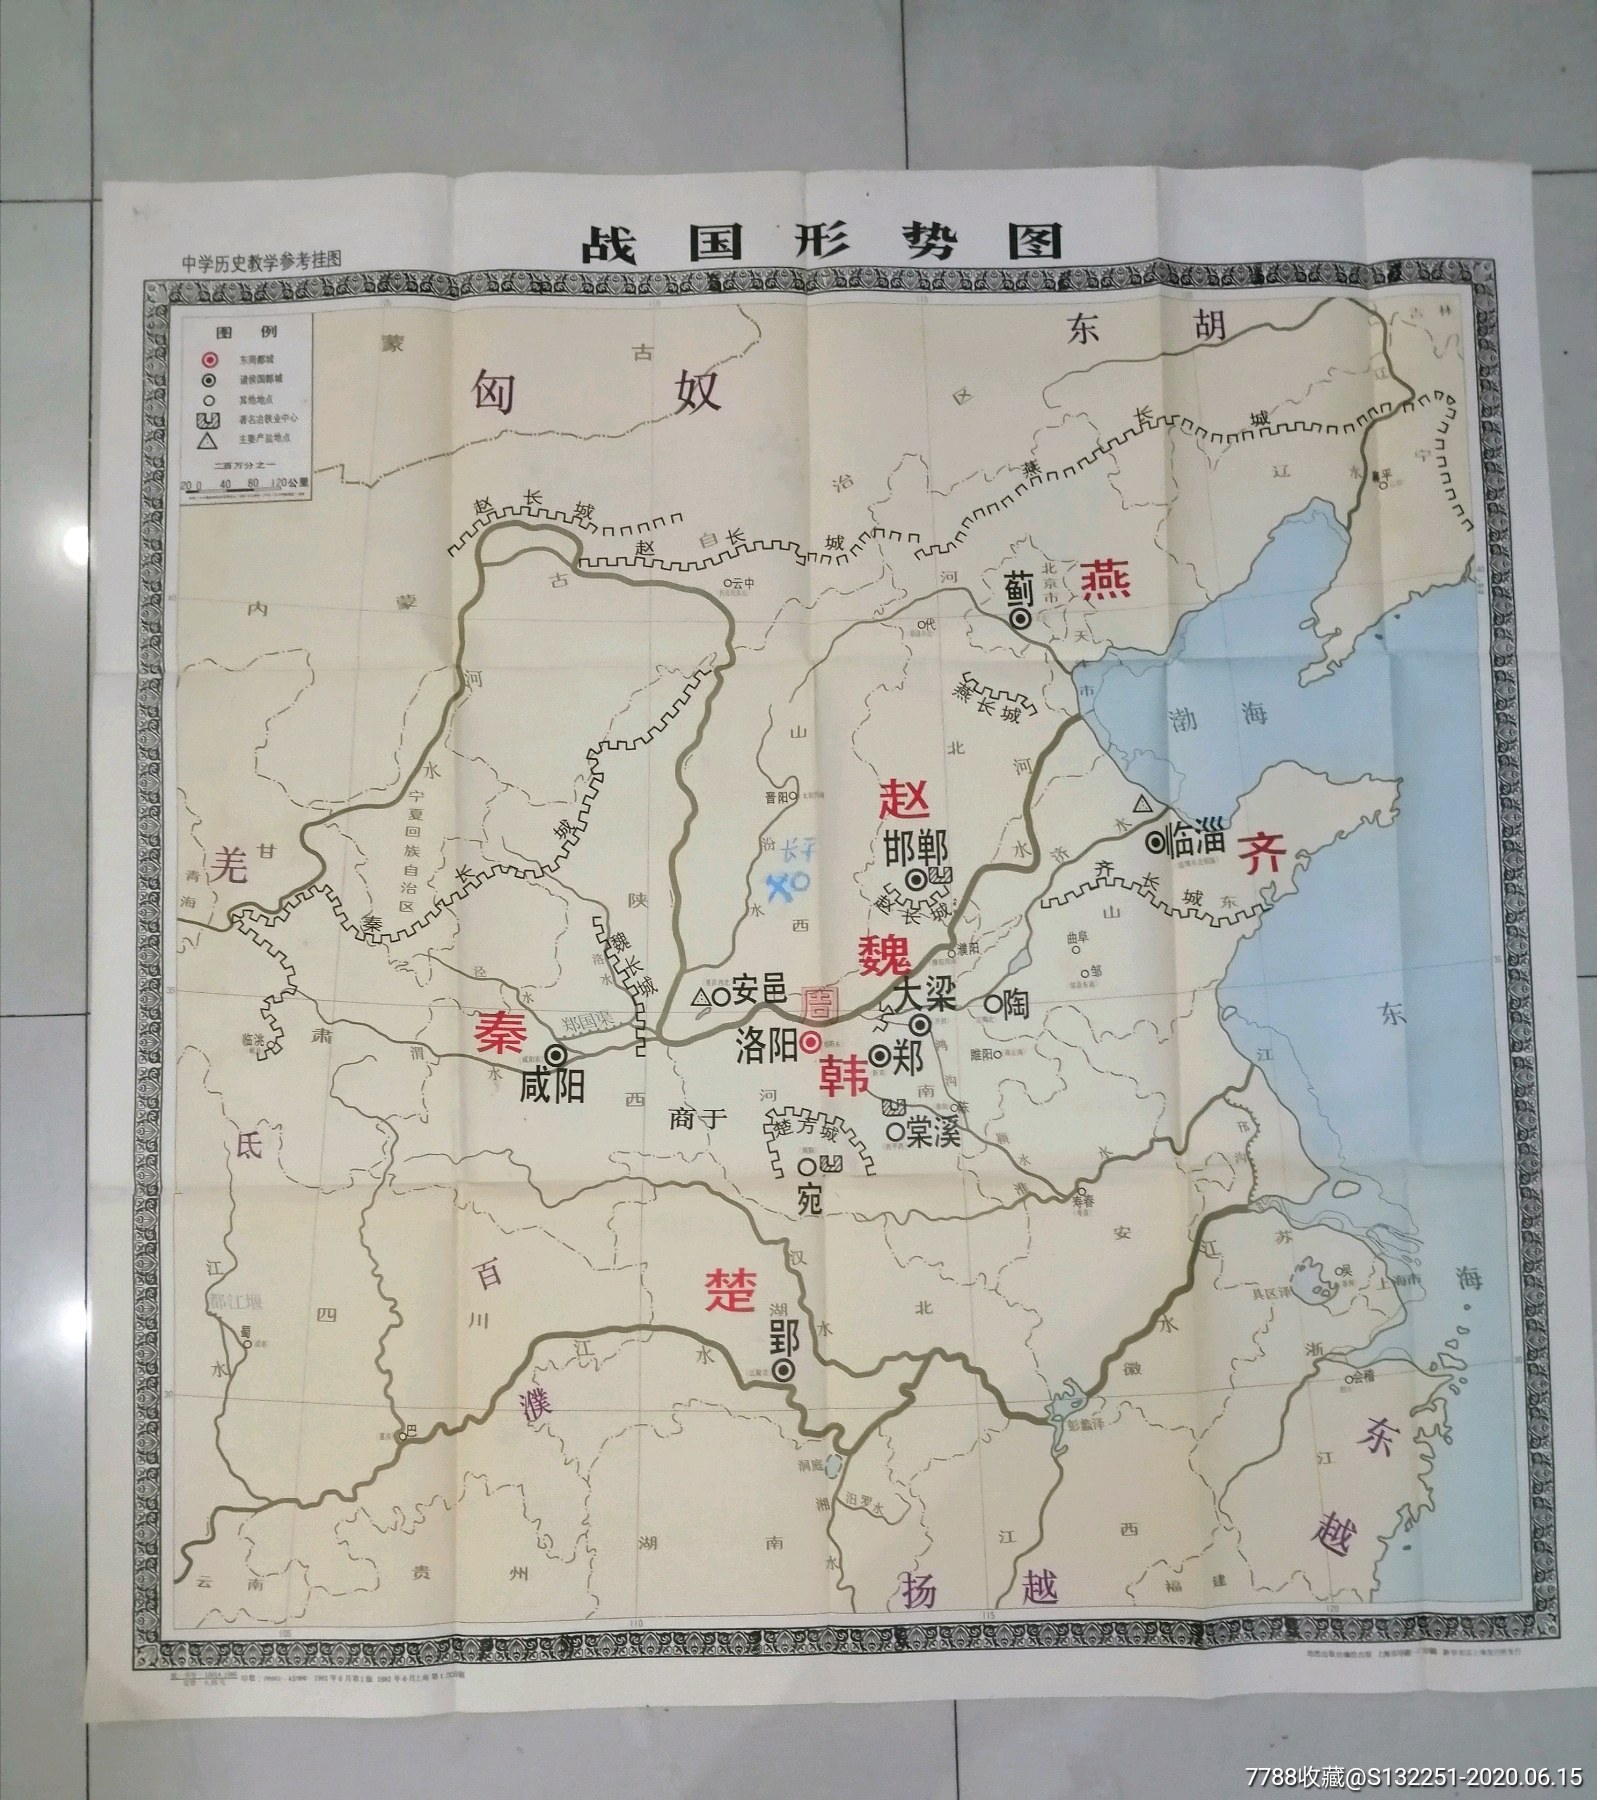 《中国土地使用图$859品99五十年代内蒙古地图$6510品99战国诸